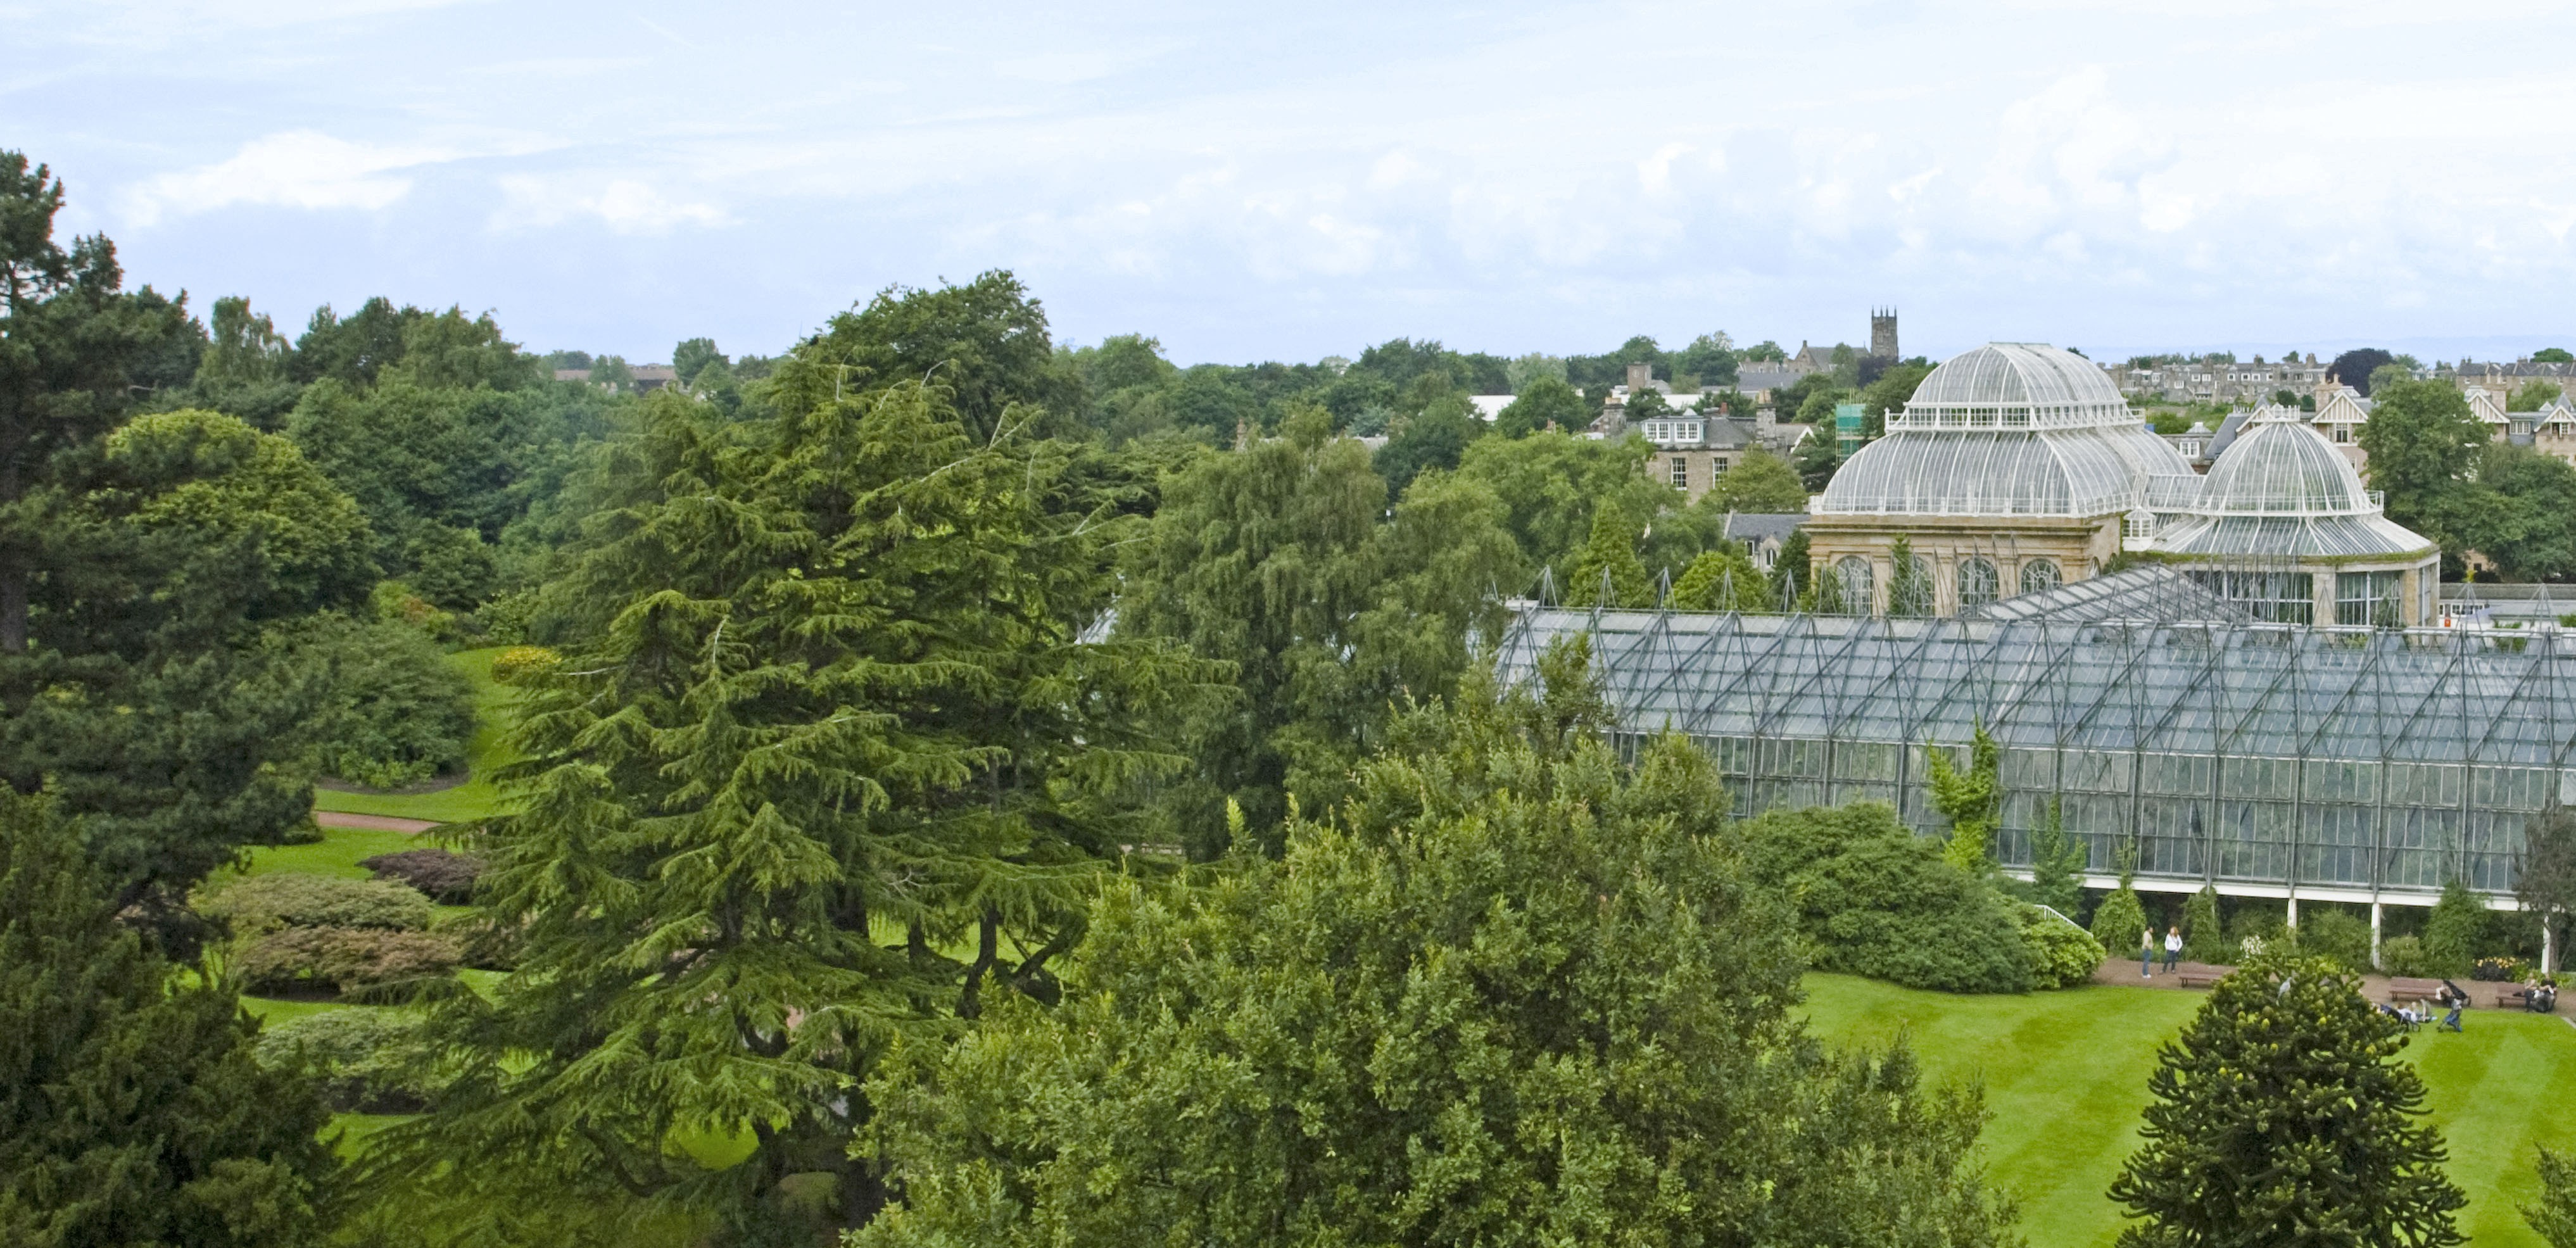 Royal botanic garden edinburgh